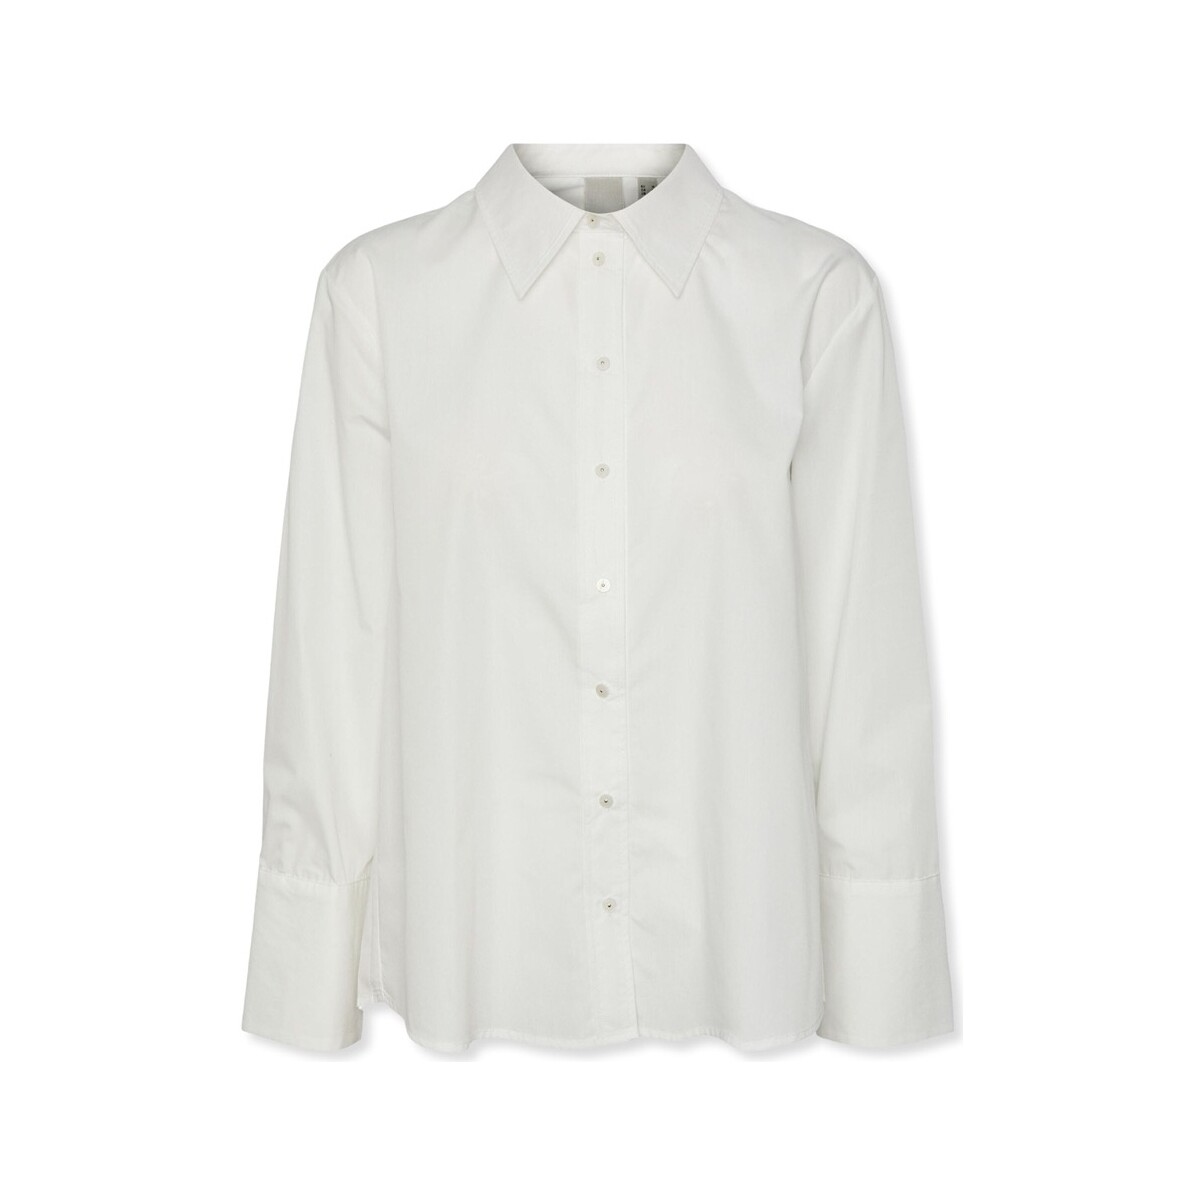 Kleidung Damen Tops / Blusen Y.a.s YAS Roya Shirt L/S - Star White Weiss